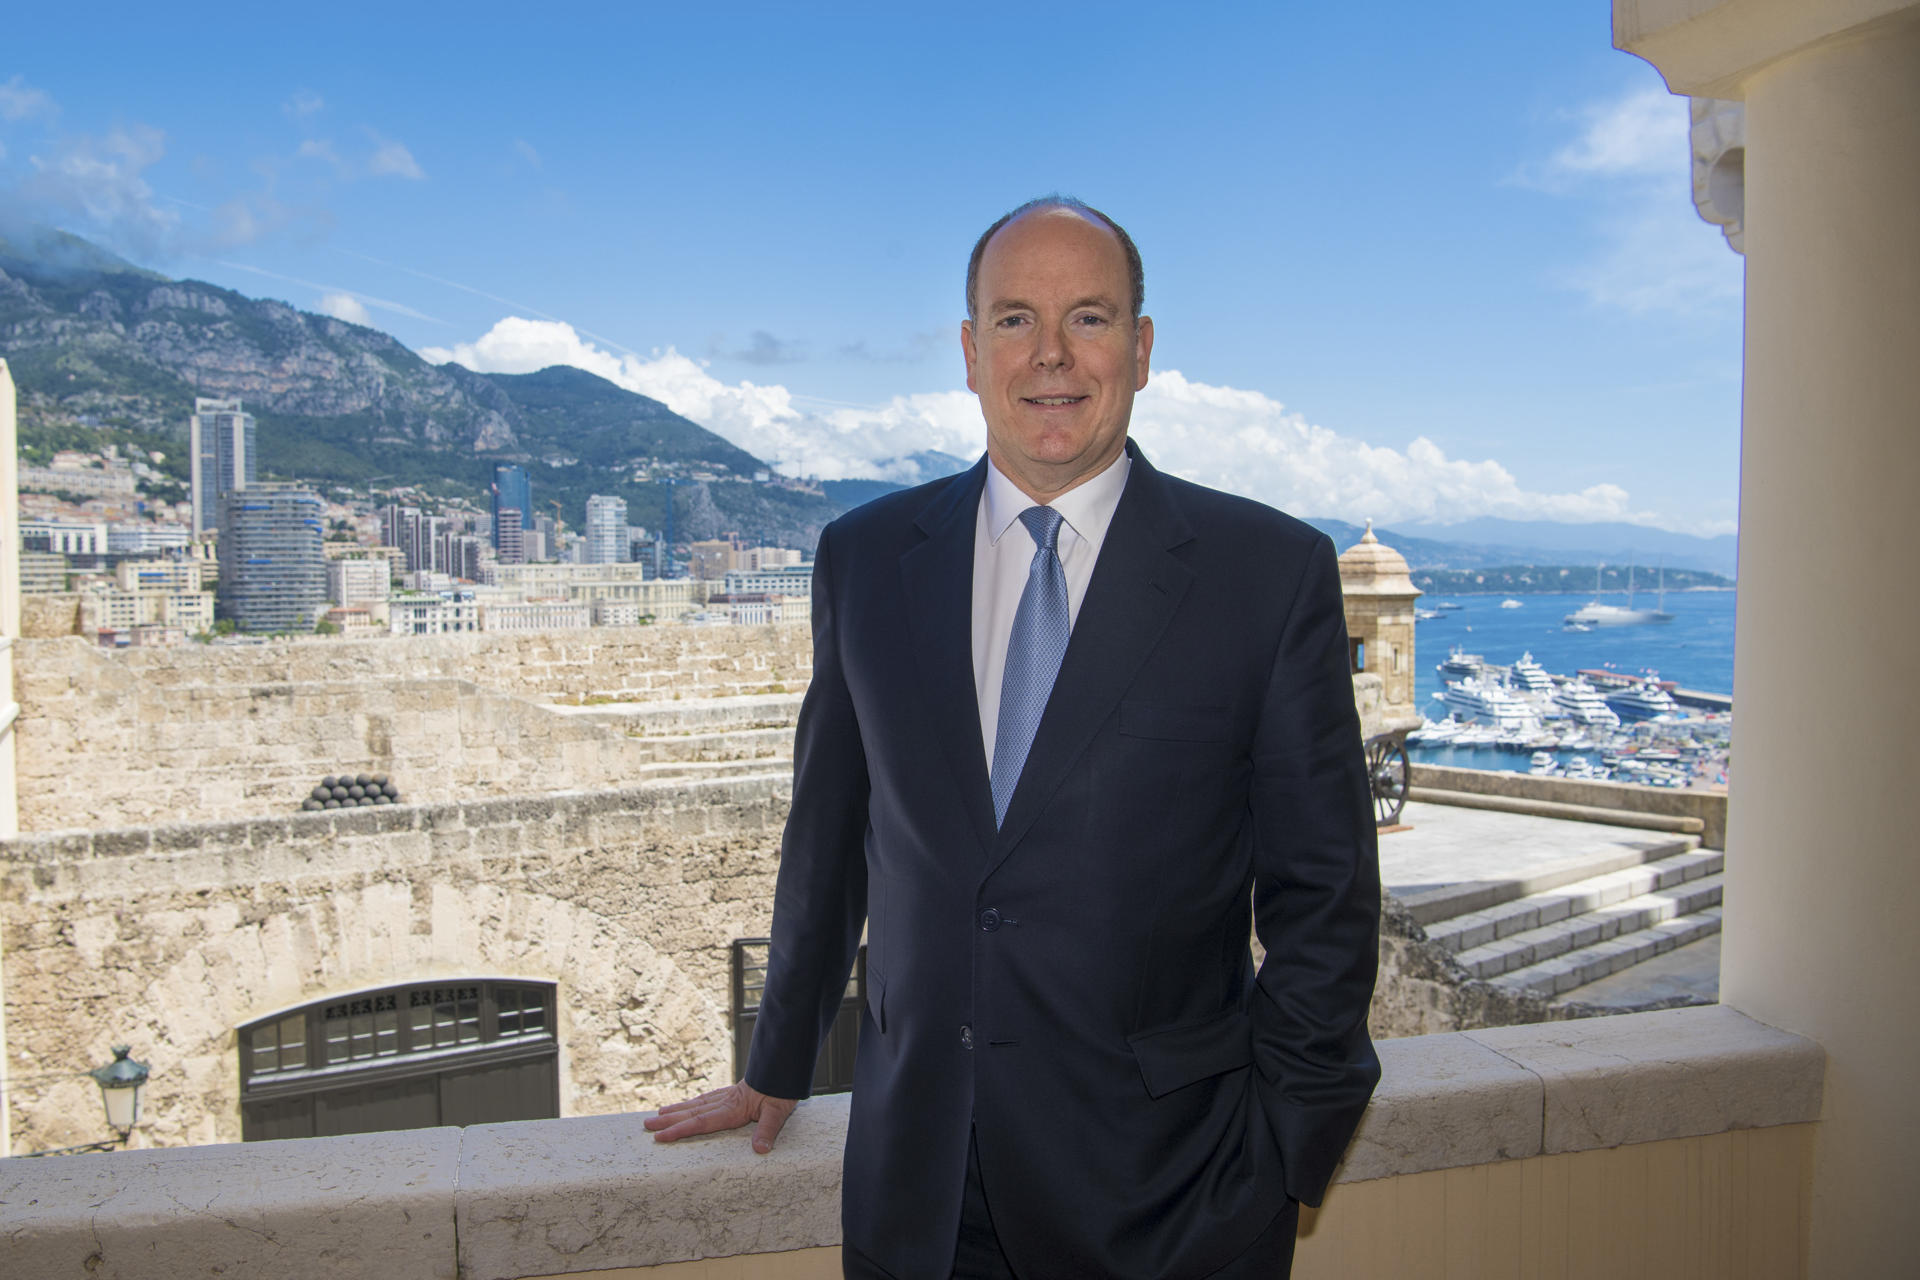 Alberto II de Mónaco: el mundo necesita decisiones ambientales valientes